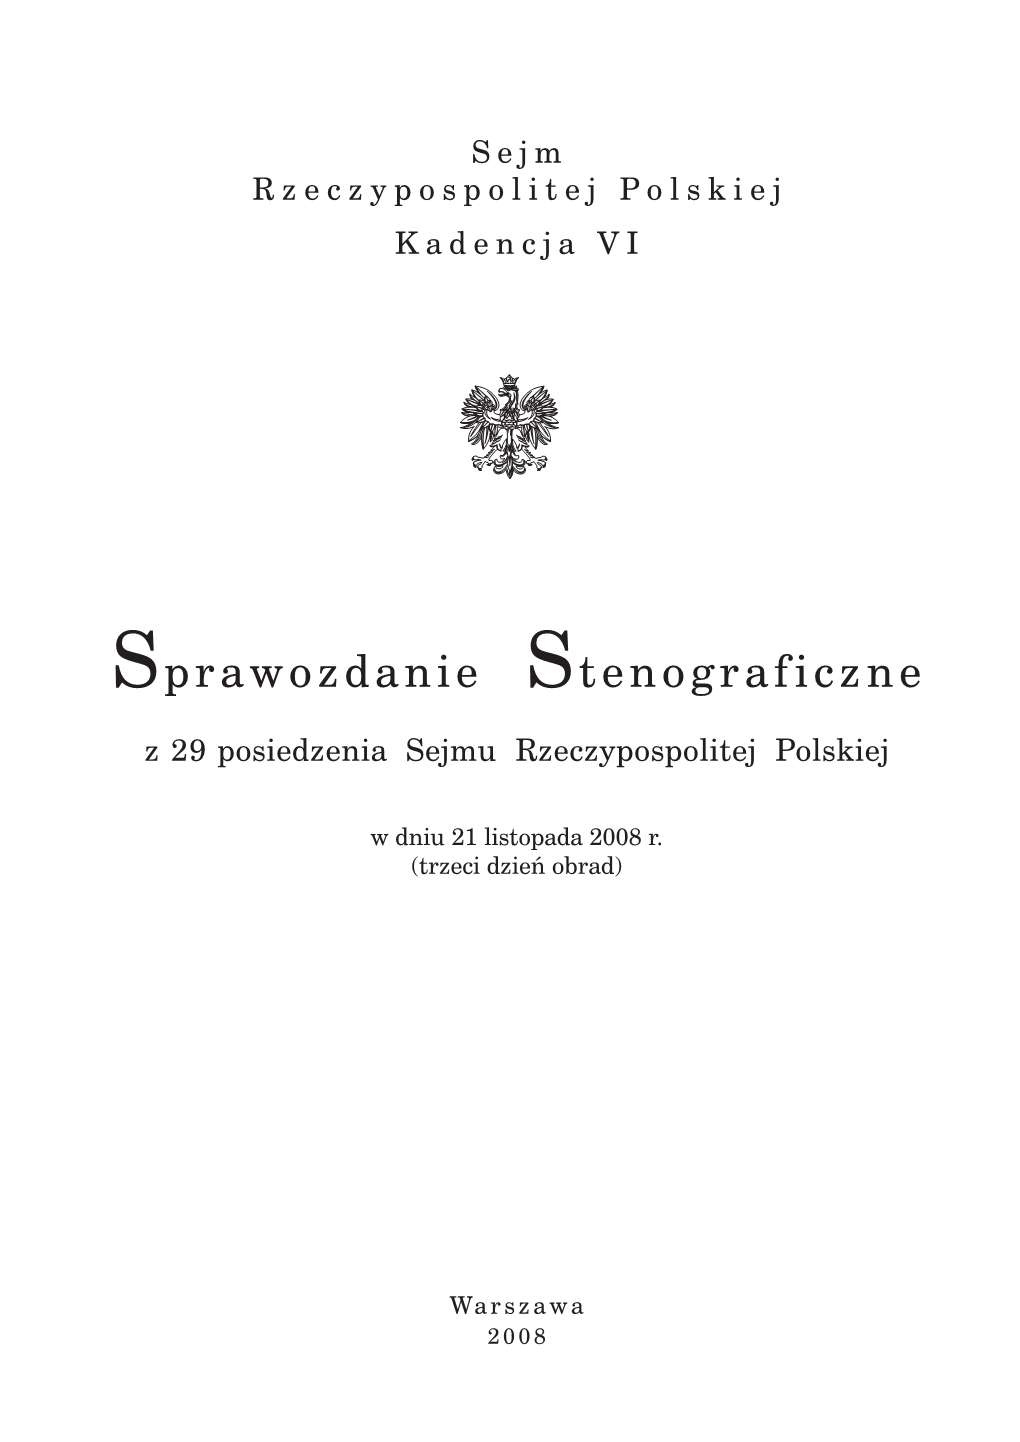 Sprawozdanie Stenograficzne Z 29 Posiedzenia Sejmu Rzeczypospolitej Polskiej